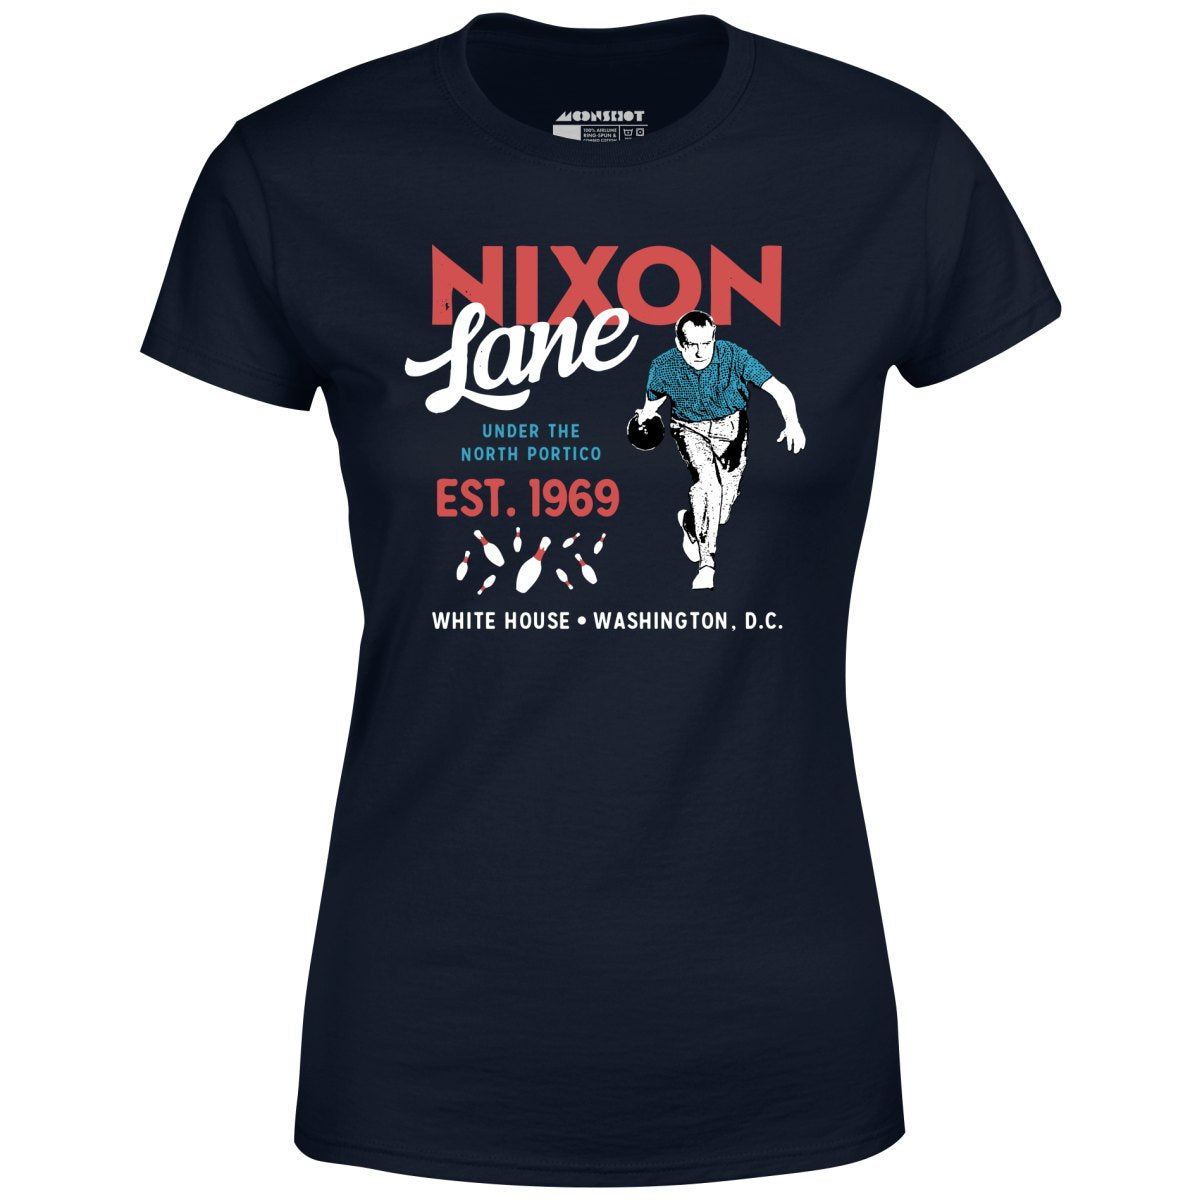 Nixon Lane - Washington D.C. - Vintage Bowling Alley - Women's T-Shirt